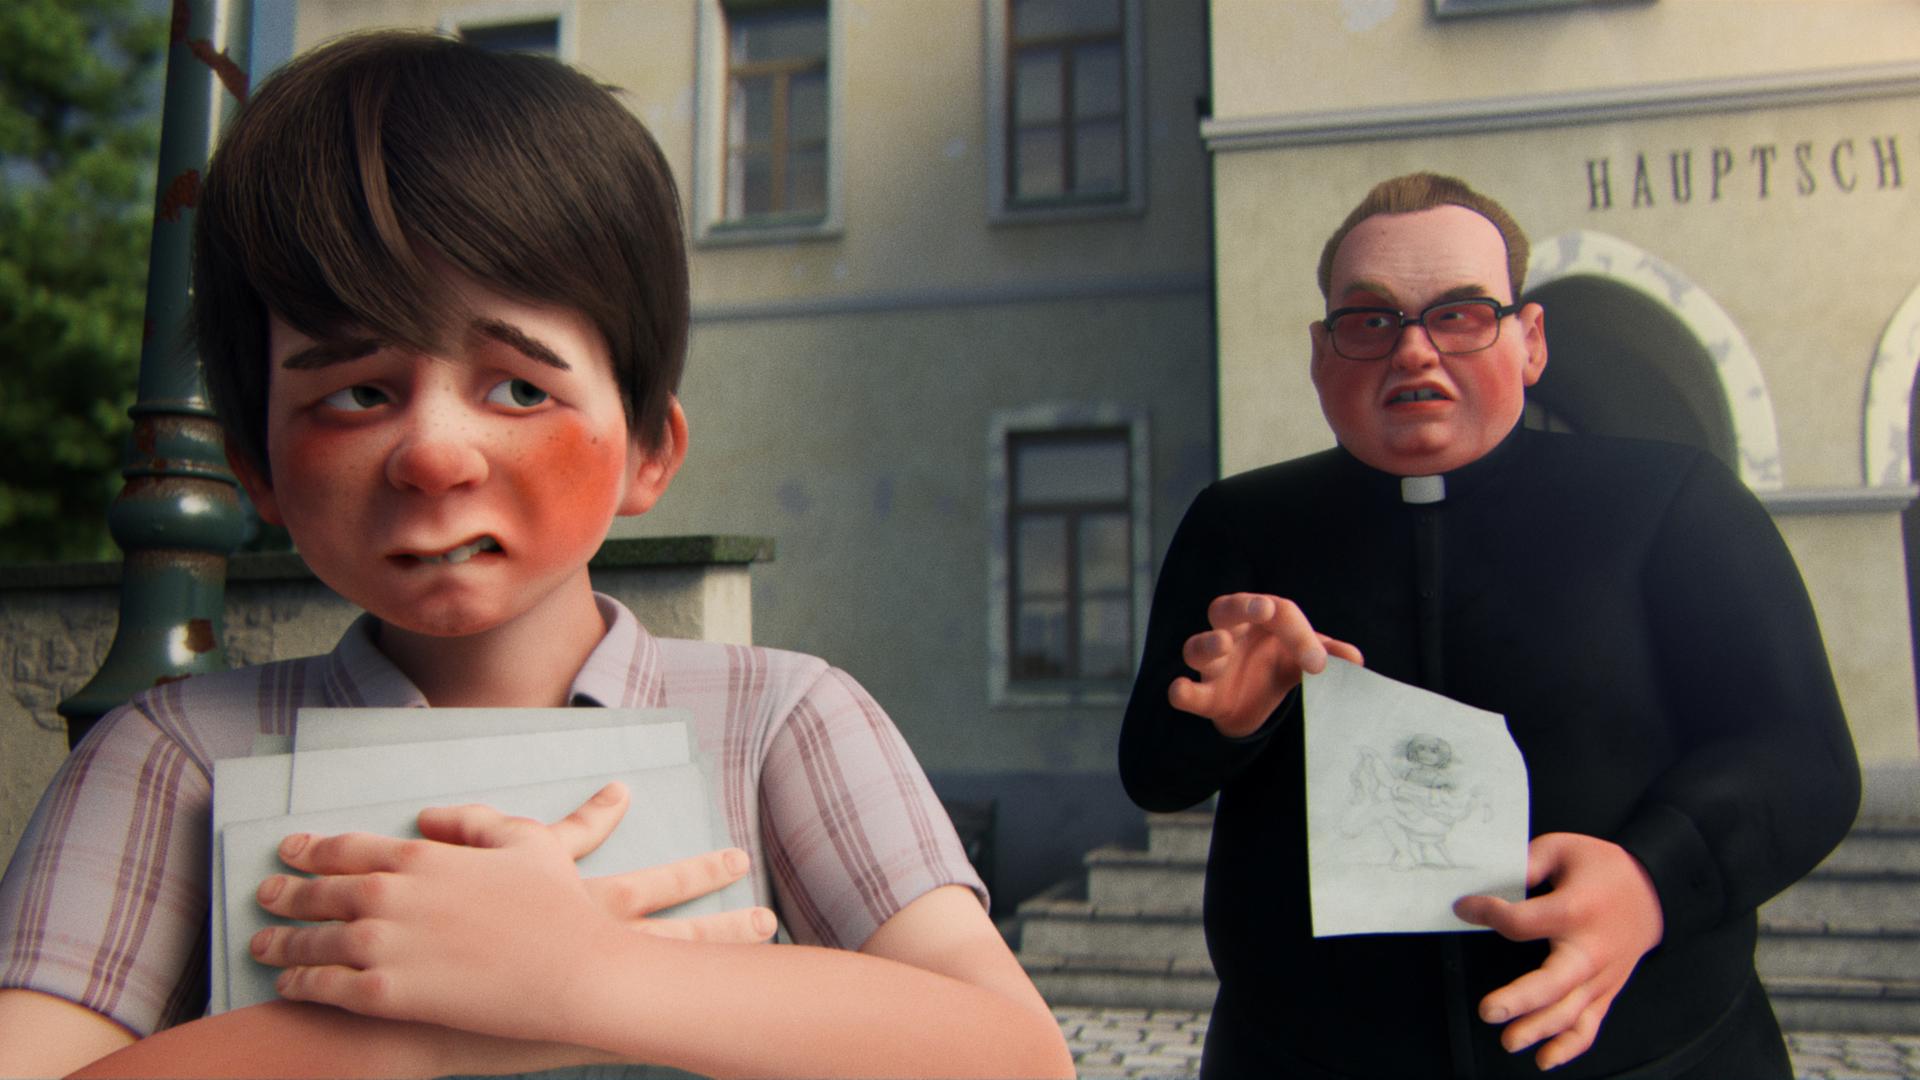 Filmstill aus dem Animationsfilm "Willkommen in Siegheilhausen". Ein Junge presst sich Zeichenblätter gegen die Brust, ein Priester trägt ihm ein verlorenes hinterher.